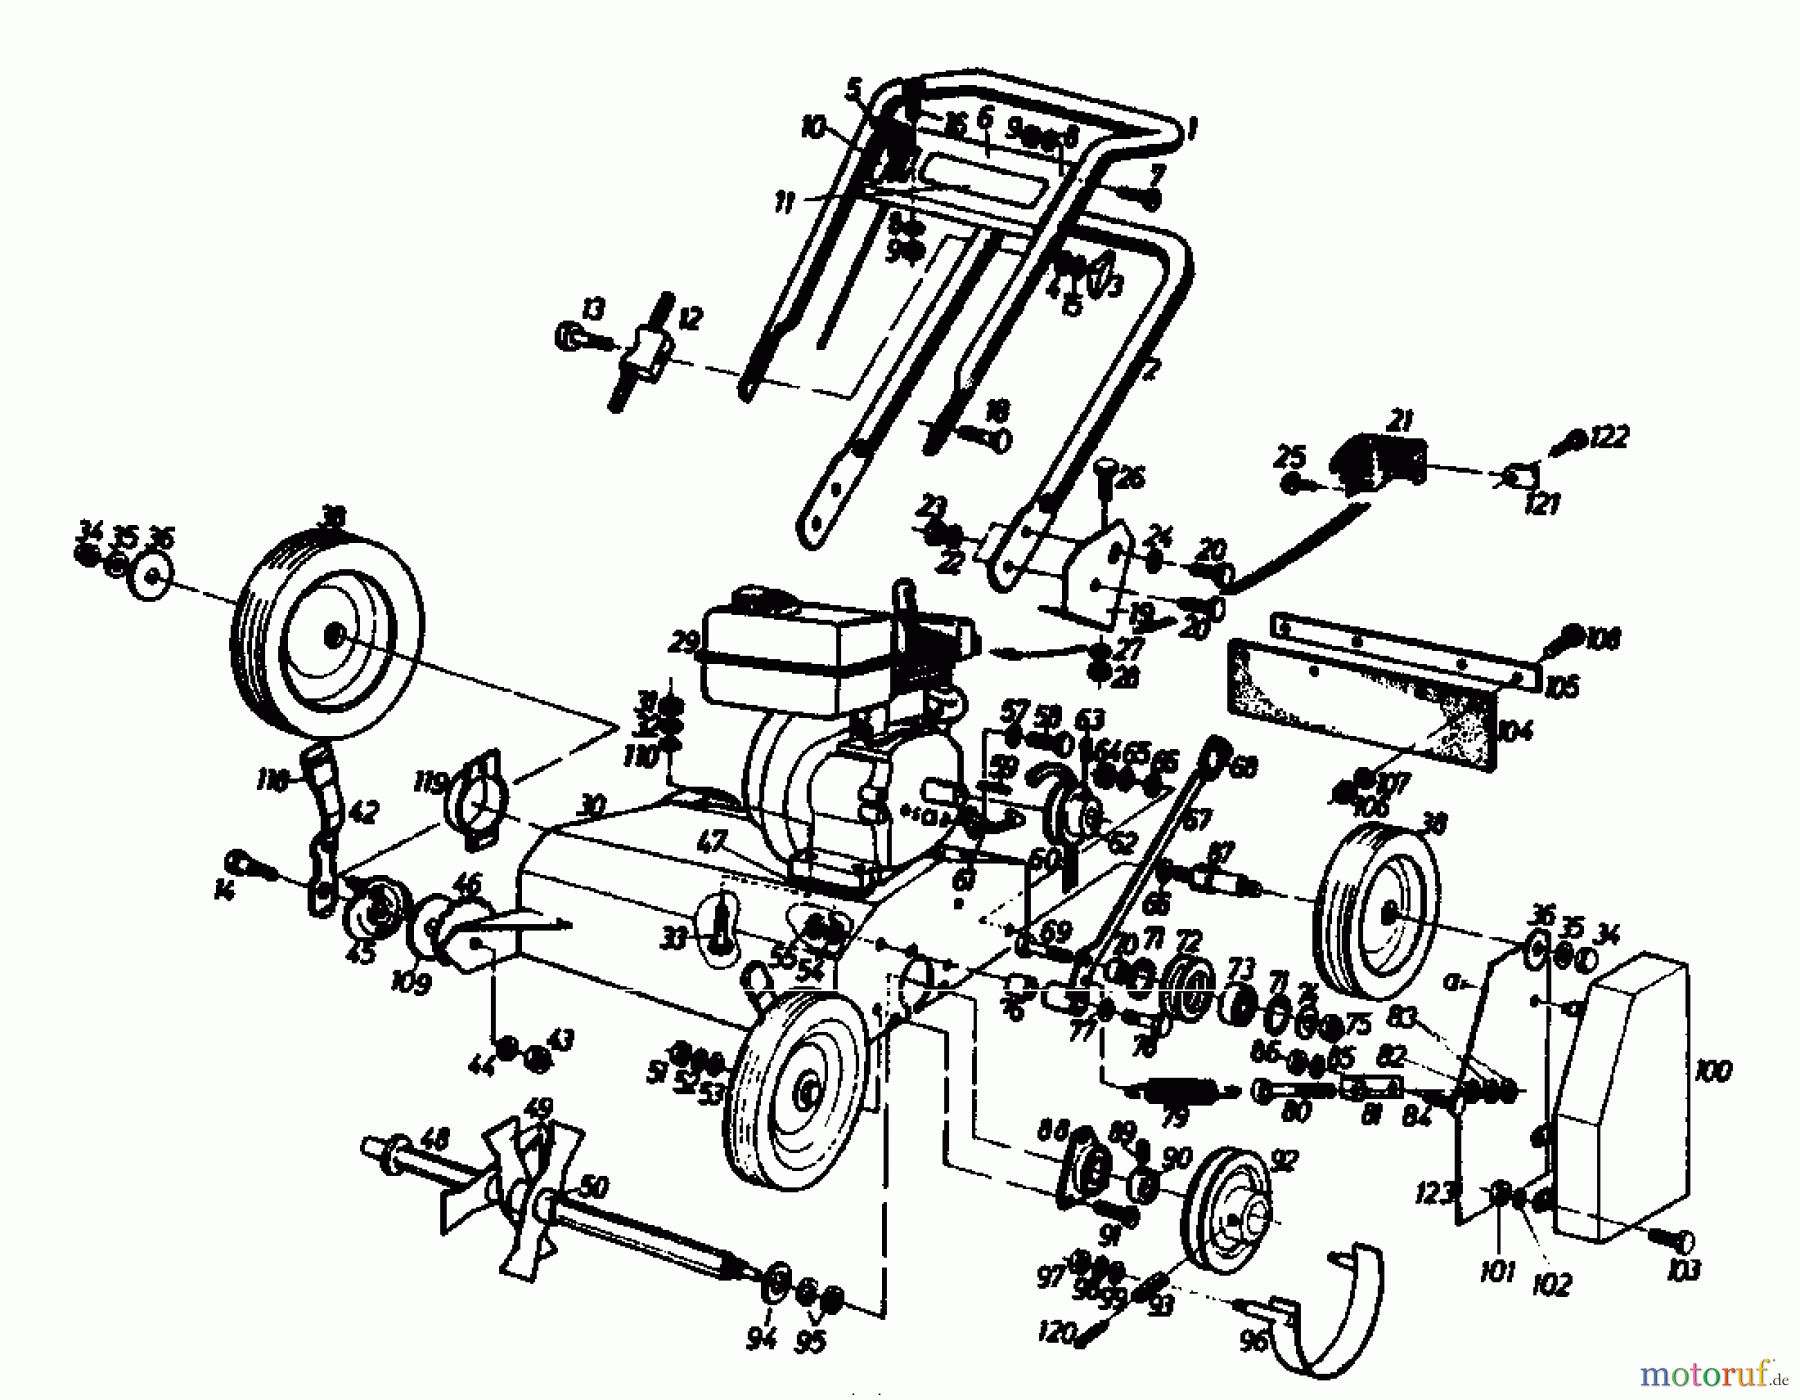  Gutbrod Petrol verticutter VS 50 A 00053.01  (1989) Basic machine